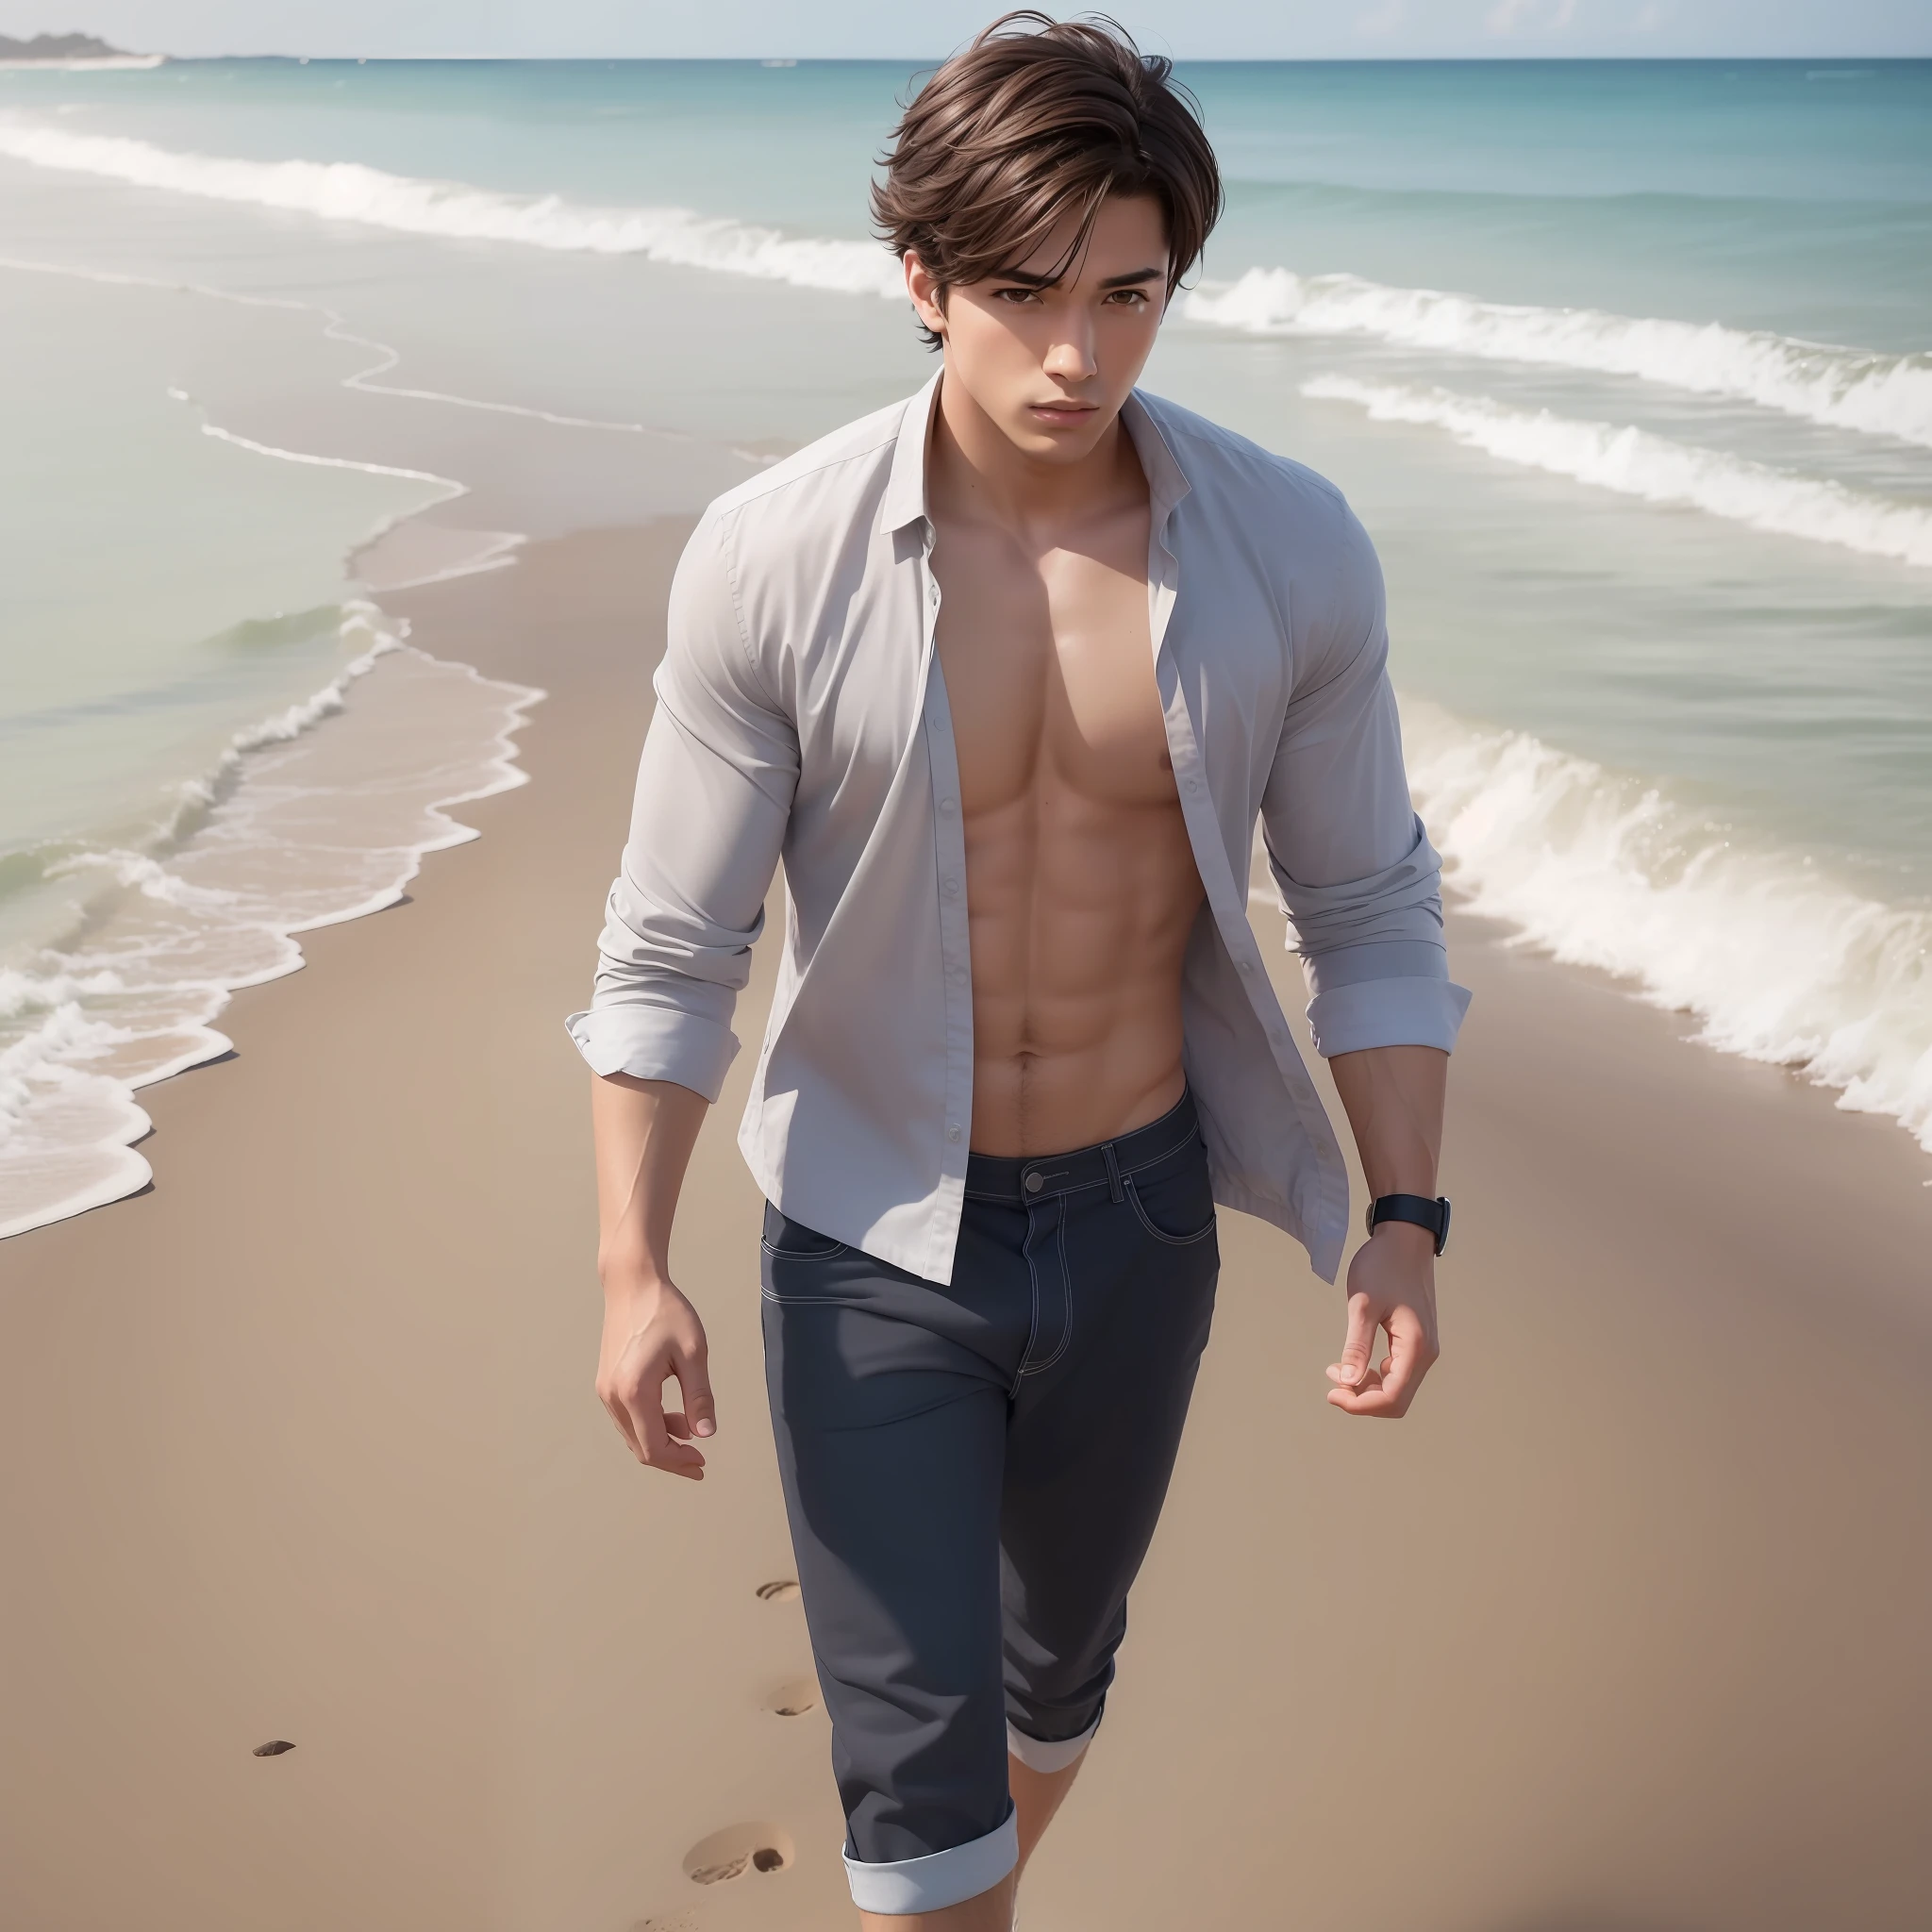 (шедевр) разрешение 8к, красивый молодой человек, прогуливающийся по популярному пляжу, Короткие черные волосы, карие глаза, карие глаза, одежда, которая была на пляже, Аниме Стиль, стиль модели,